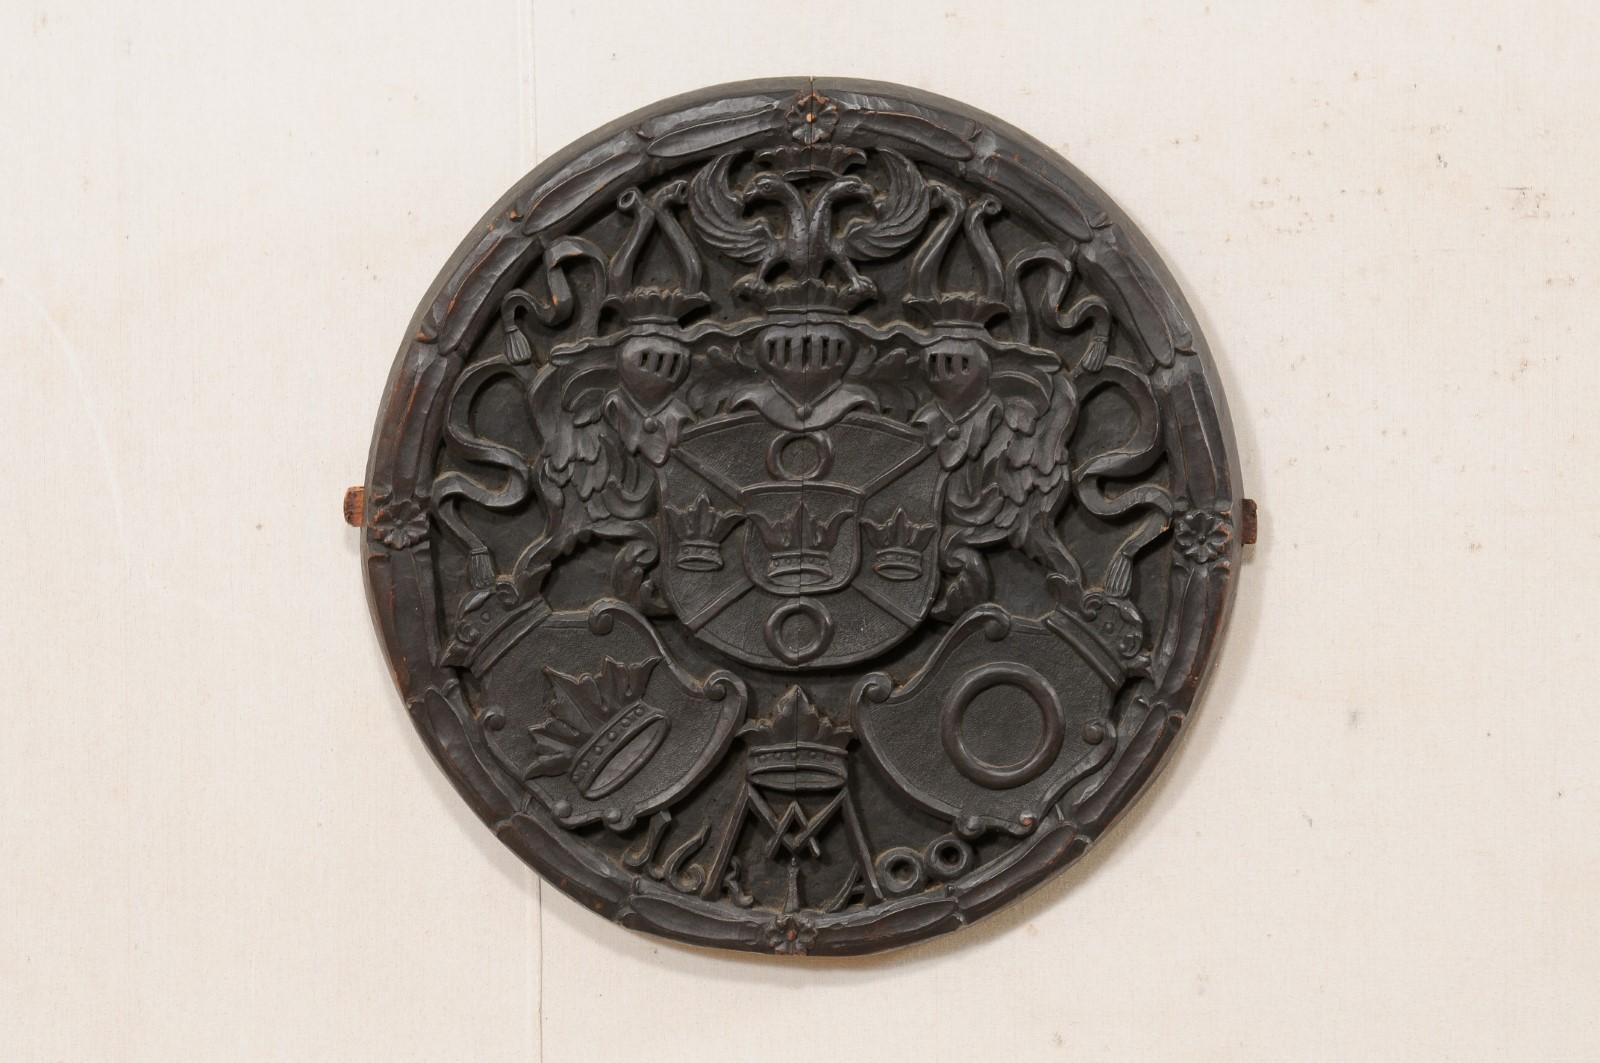 Plaque anglaise en bois sculpté datant de la fin du XIXe siècle. Cette décoration murale antique d'Angleterre, de forme circulaire et de 2 pieds de diamètre, a été sculptée à la main avec un bouclier de couronnes au centre, avec trois chevaliers